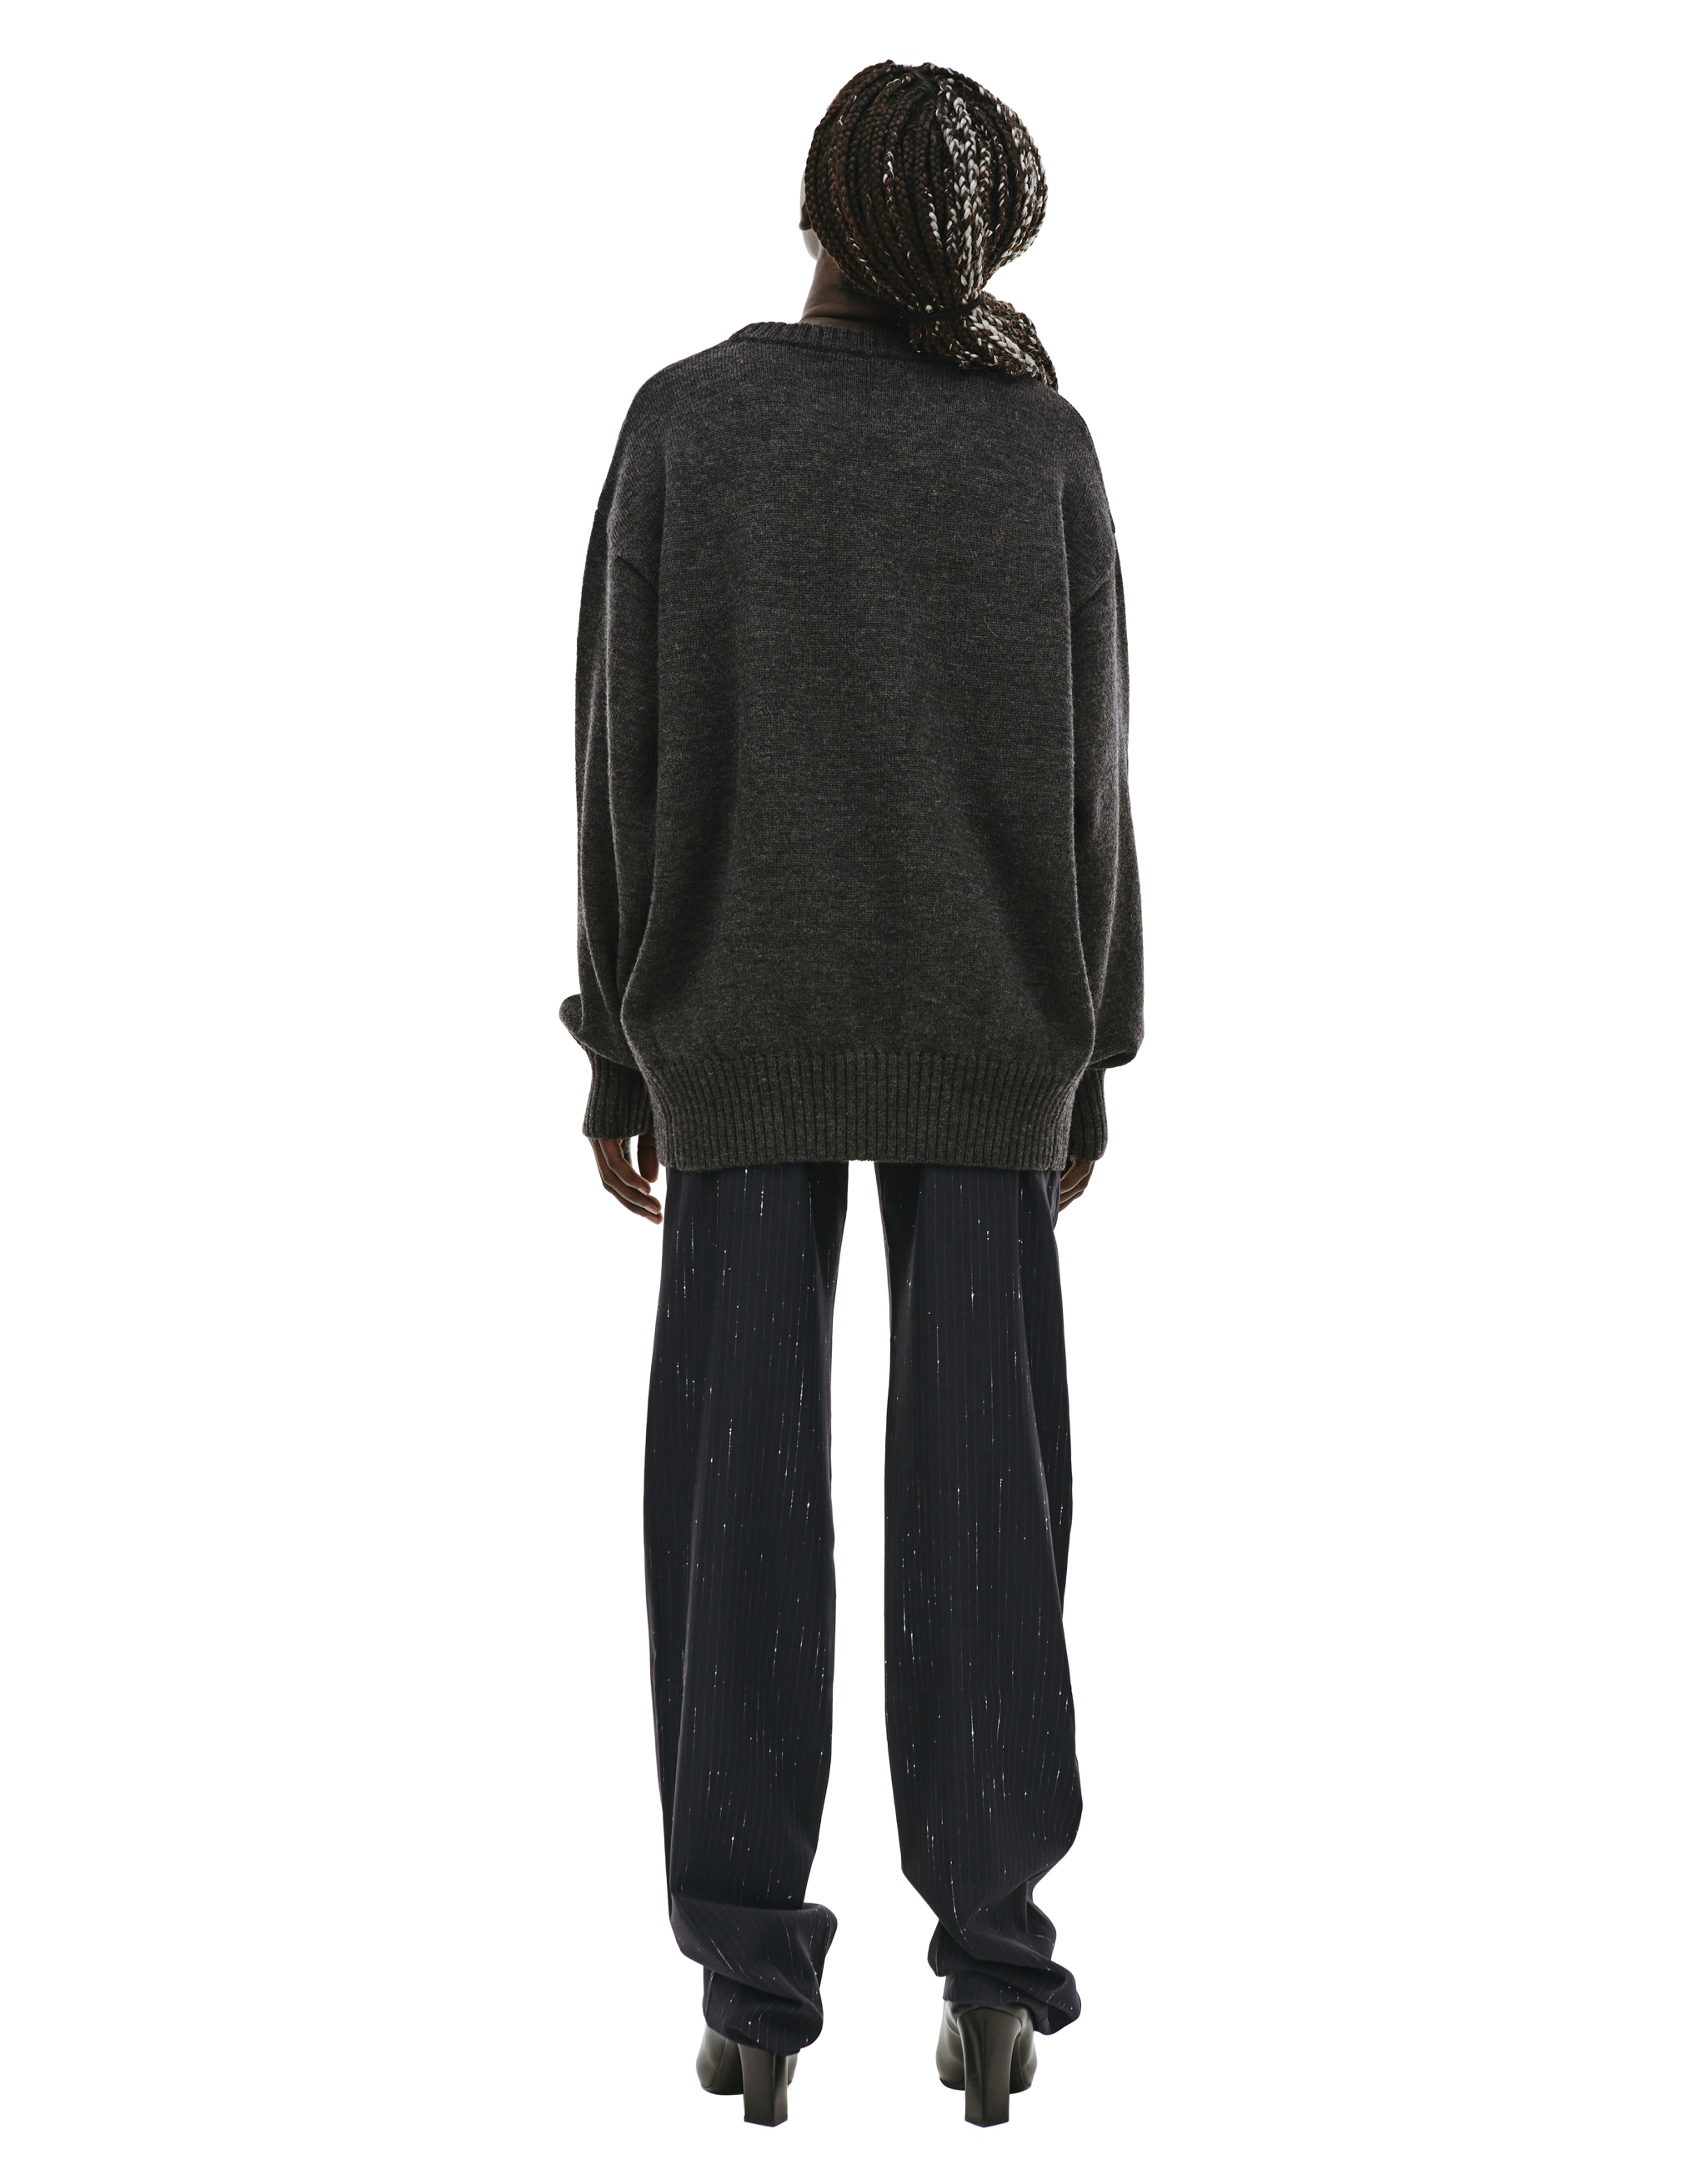 Шерстяной свитер с вышивкой Undercover UC2B4903/1, размер 4;5 UC2B4903/1 - фото 3